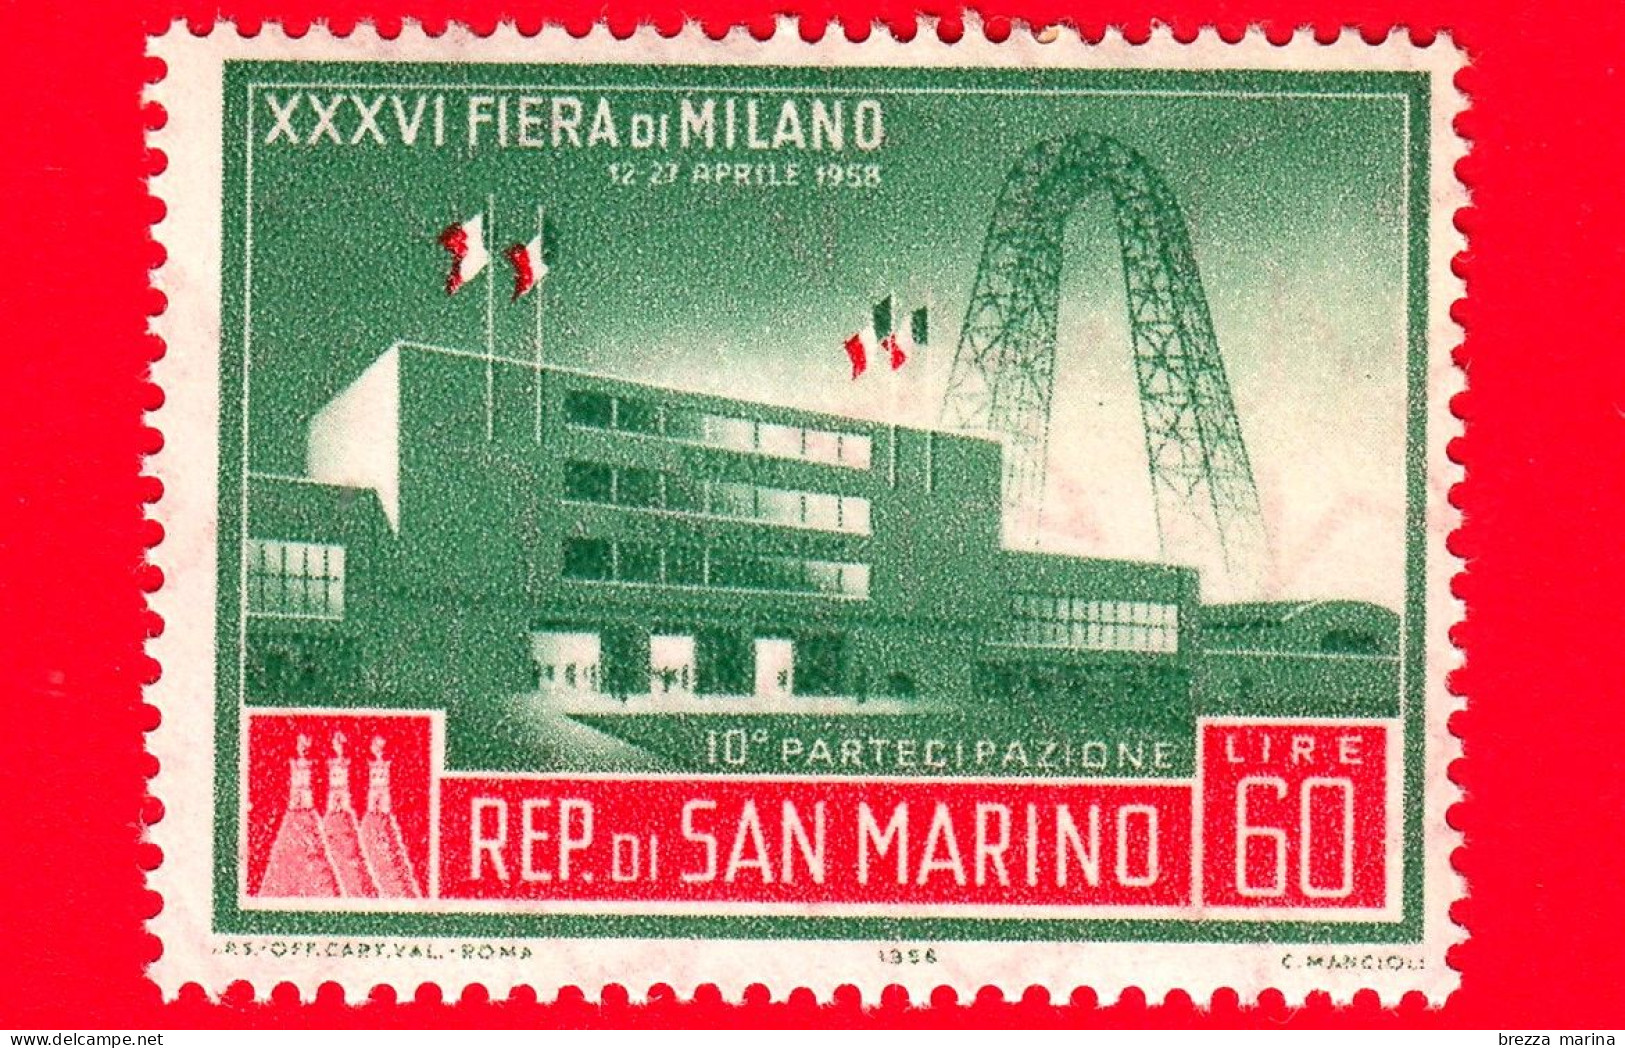 Nuovo - MNH - SAN MARINO - 1958 - XXXVI Fiera Di Milano - 10 Partecipazione - 60 - Ungebraucht